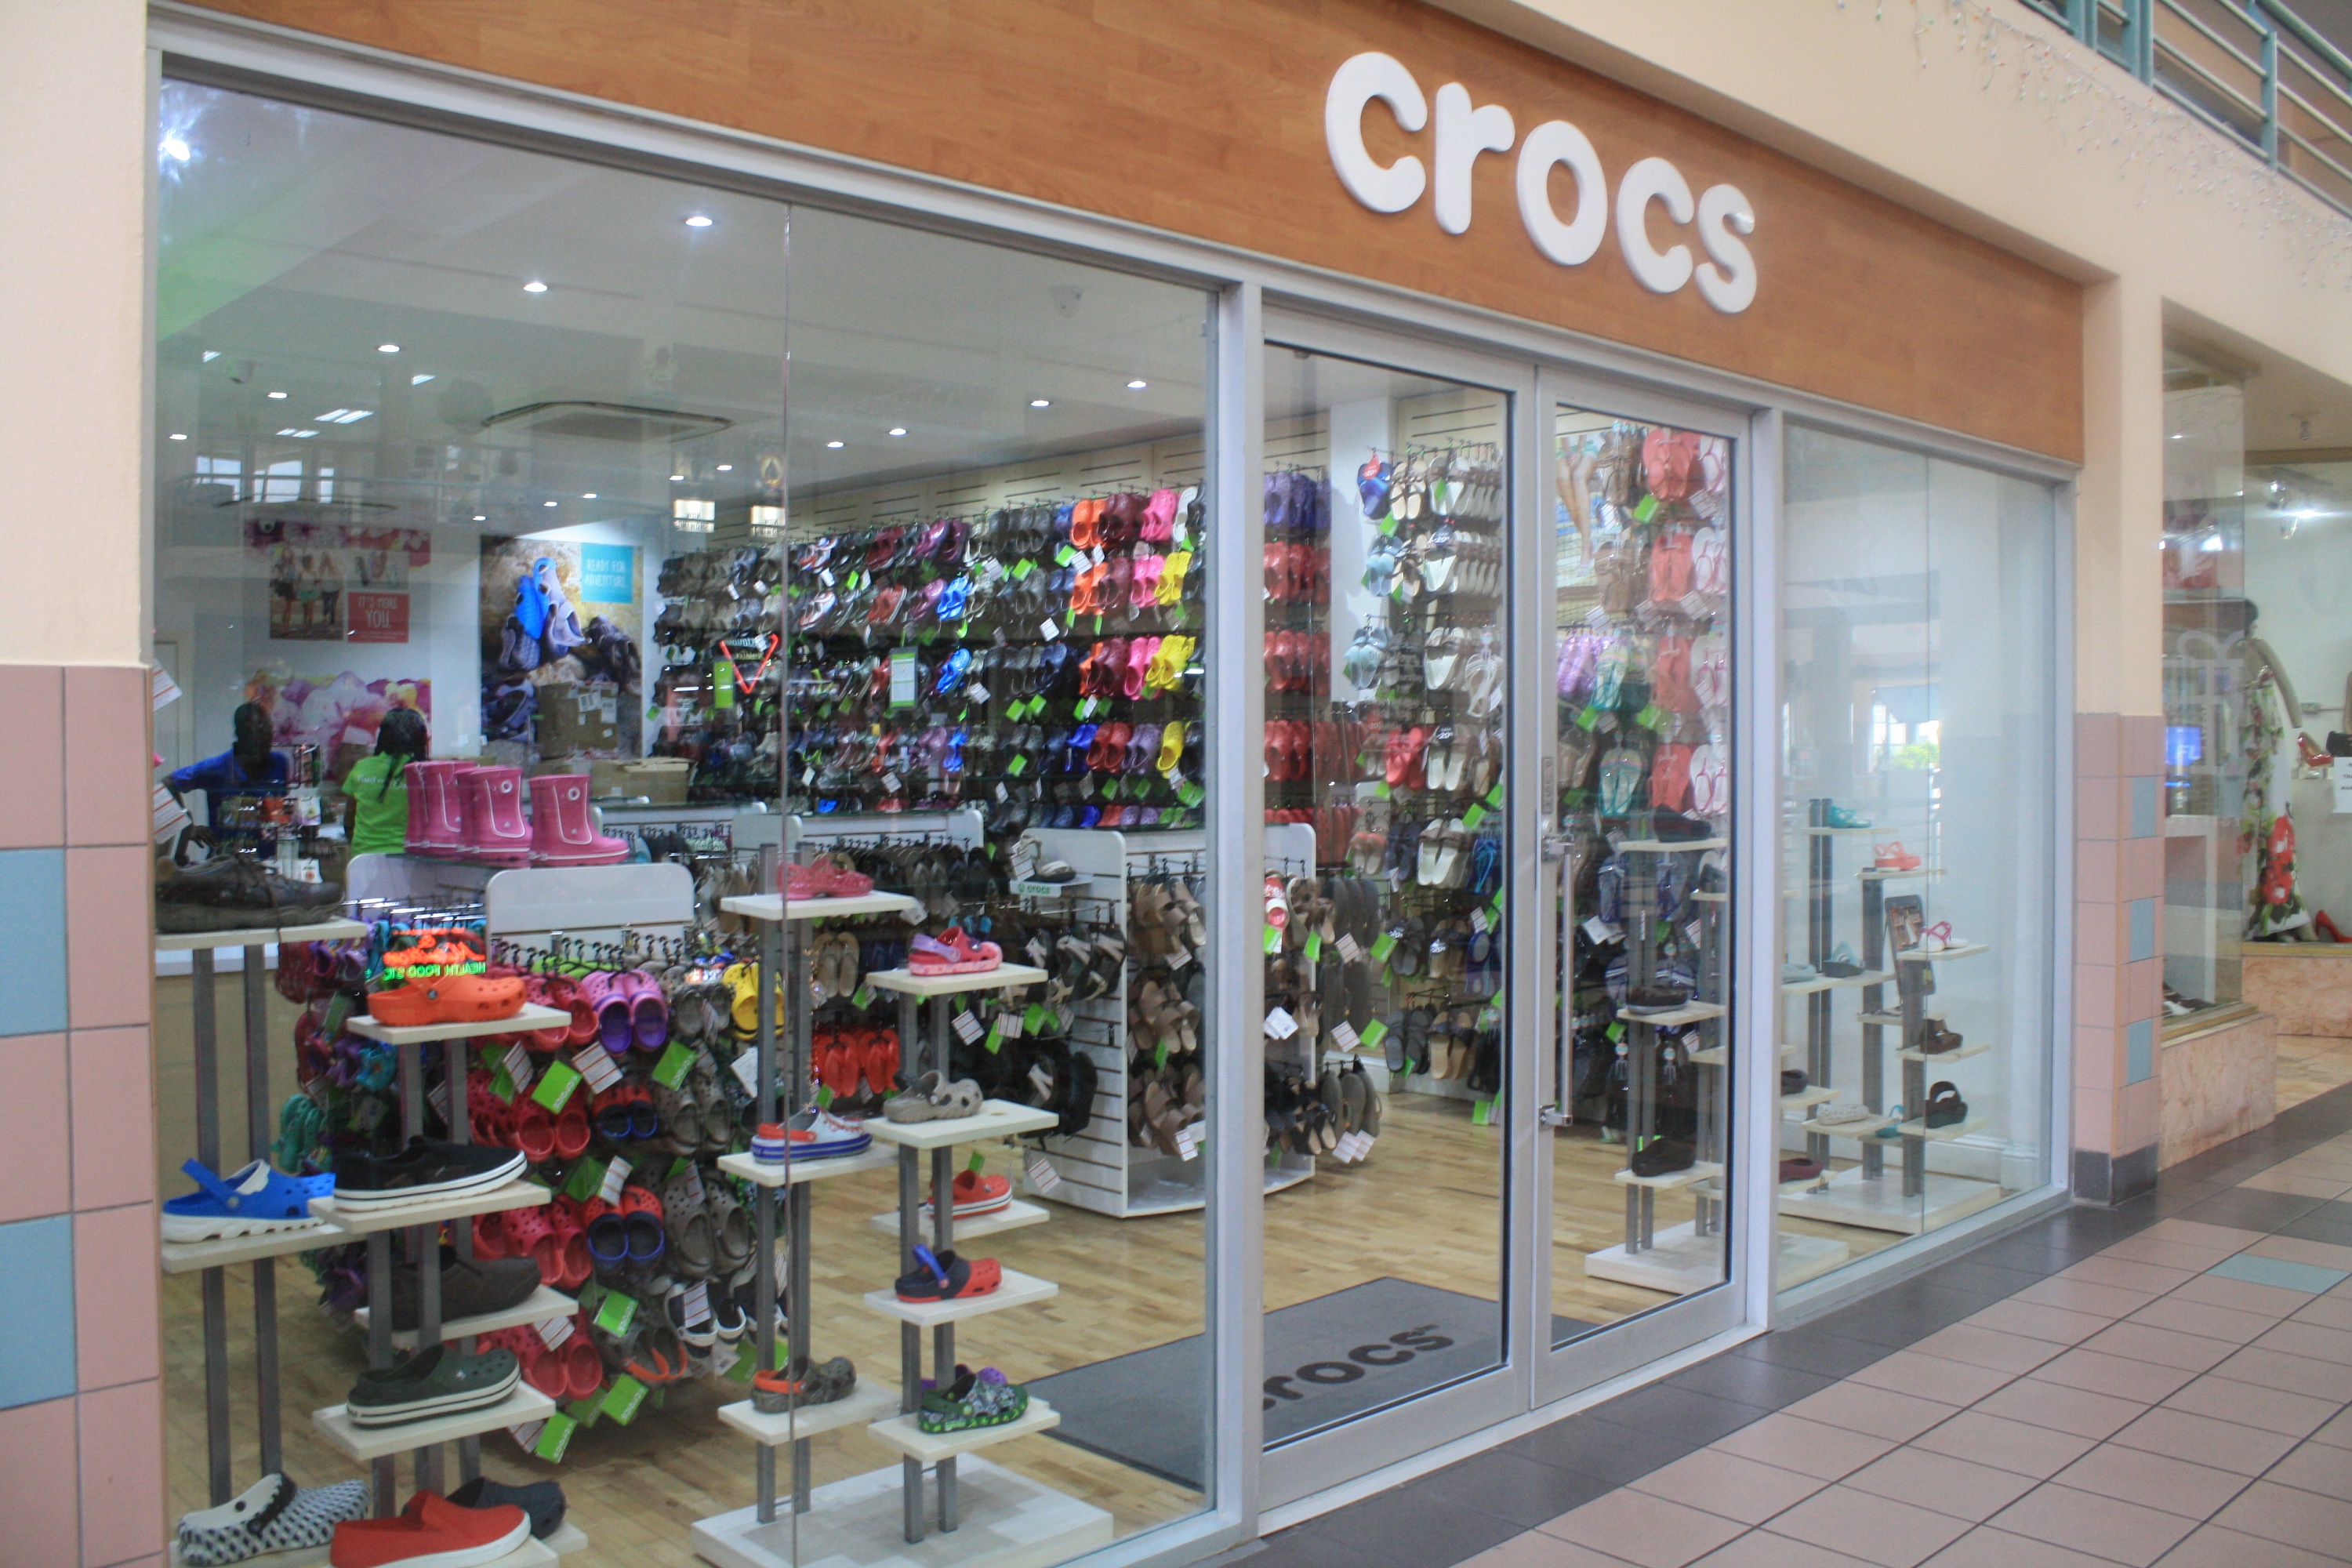 crocs store prices